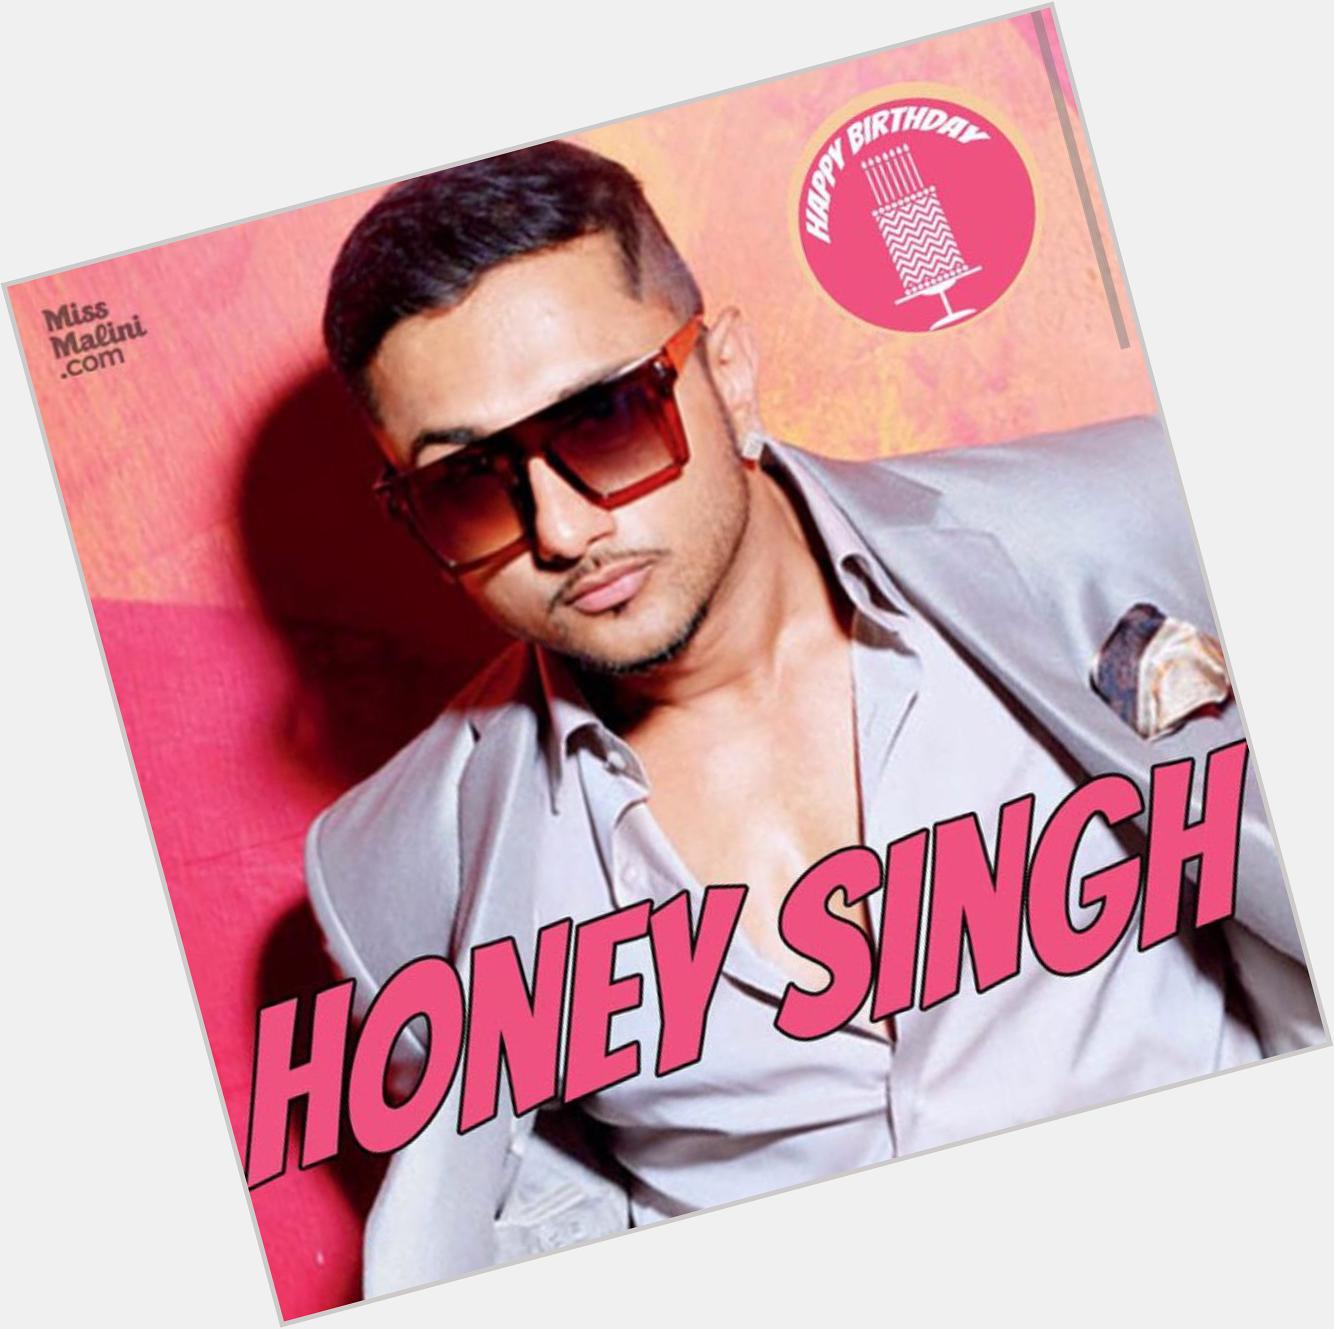 Happy birthday Yo Yo Honey Singh! and tell me, which is your favourite Yo Yo Honey Singh song? 